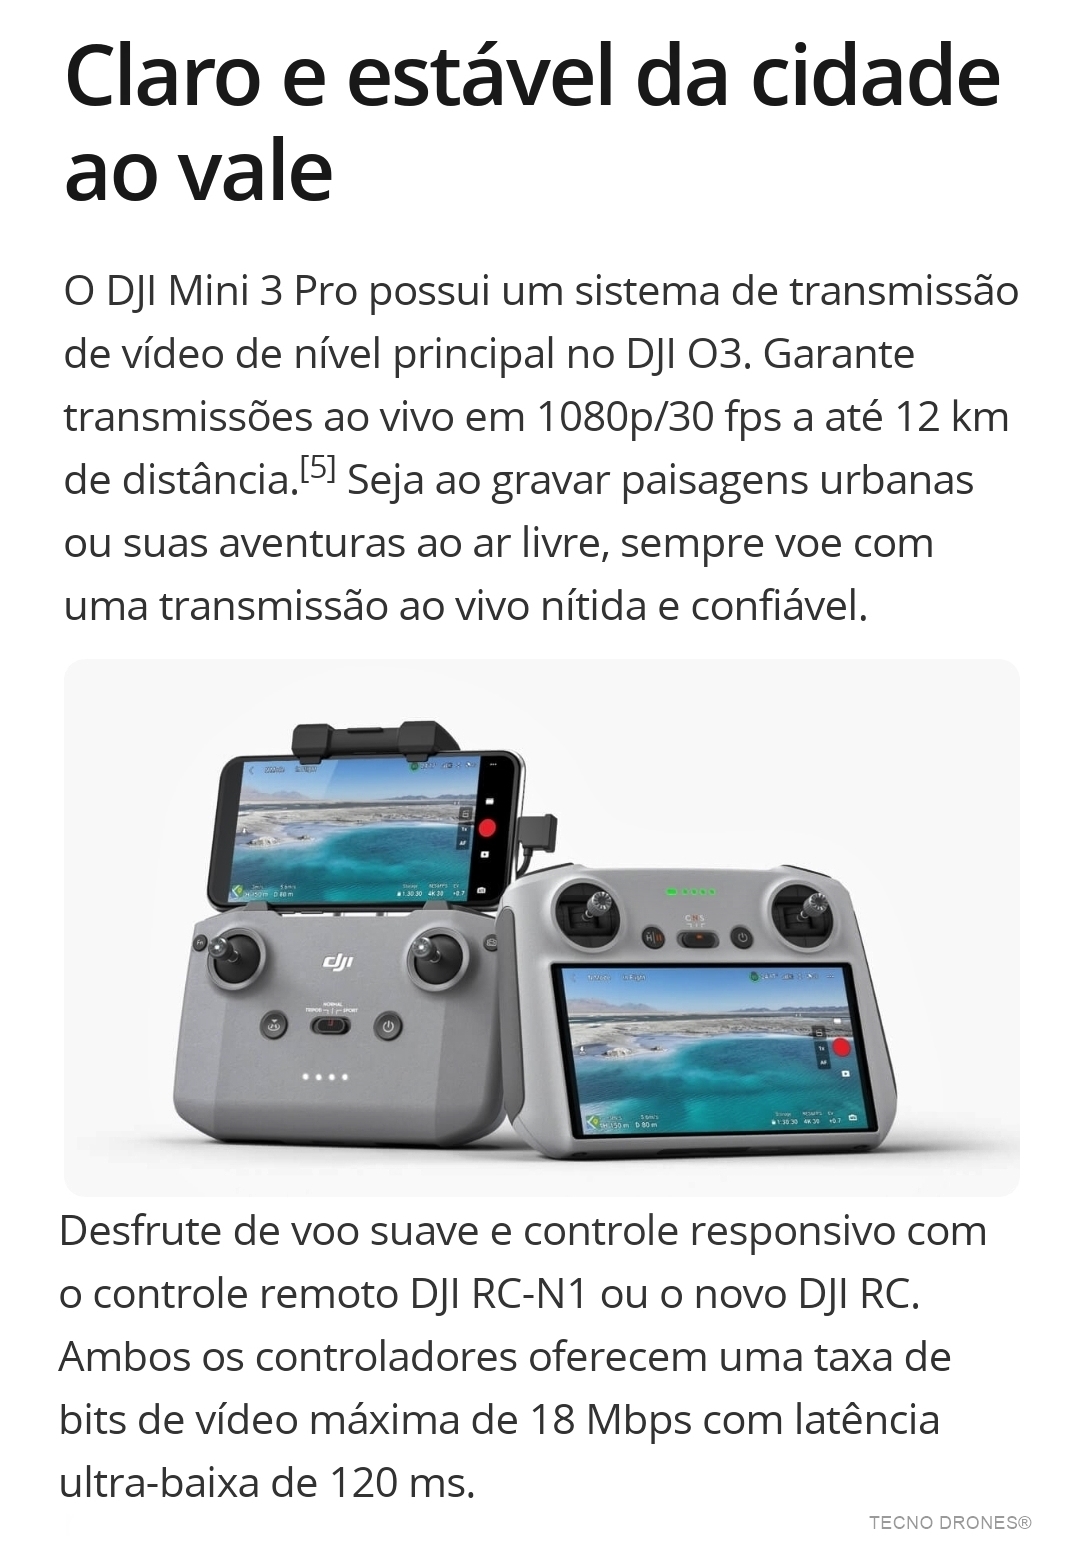 Drone Dji Mini 3 Pro Fly More Kit